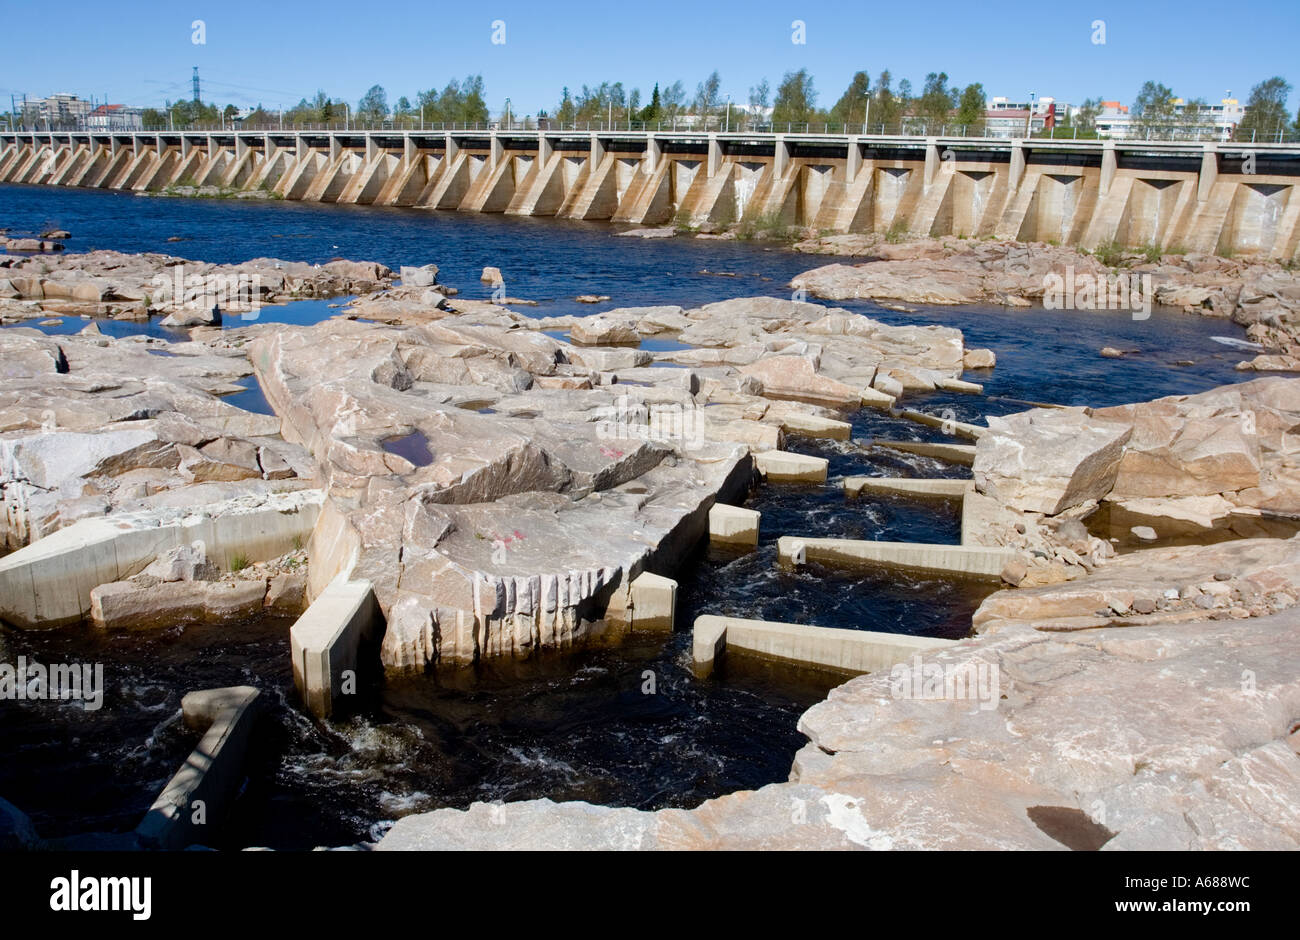 L'échelle à poissons artificiels à dynamité l'ancien lit de la rivière rock passant le barrage d'eau Merikoski au fleuve Oulujoki , Finlande Banque D'Images